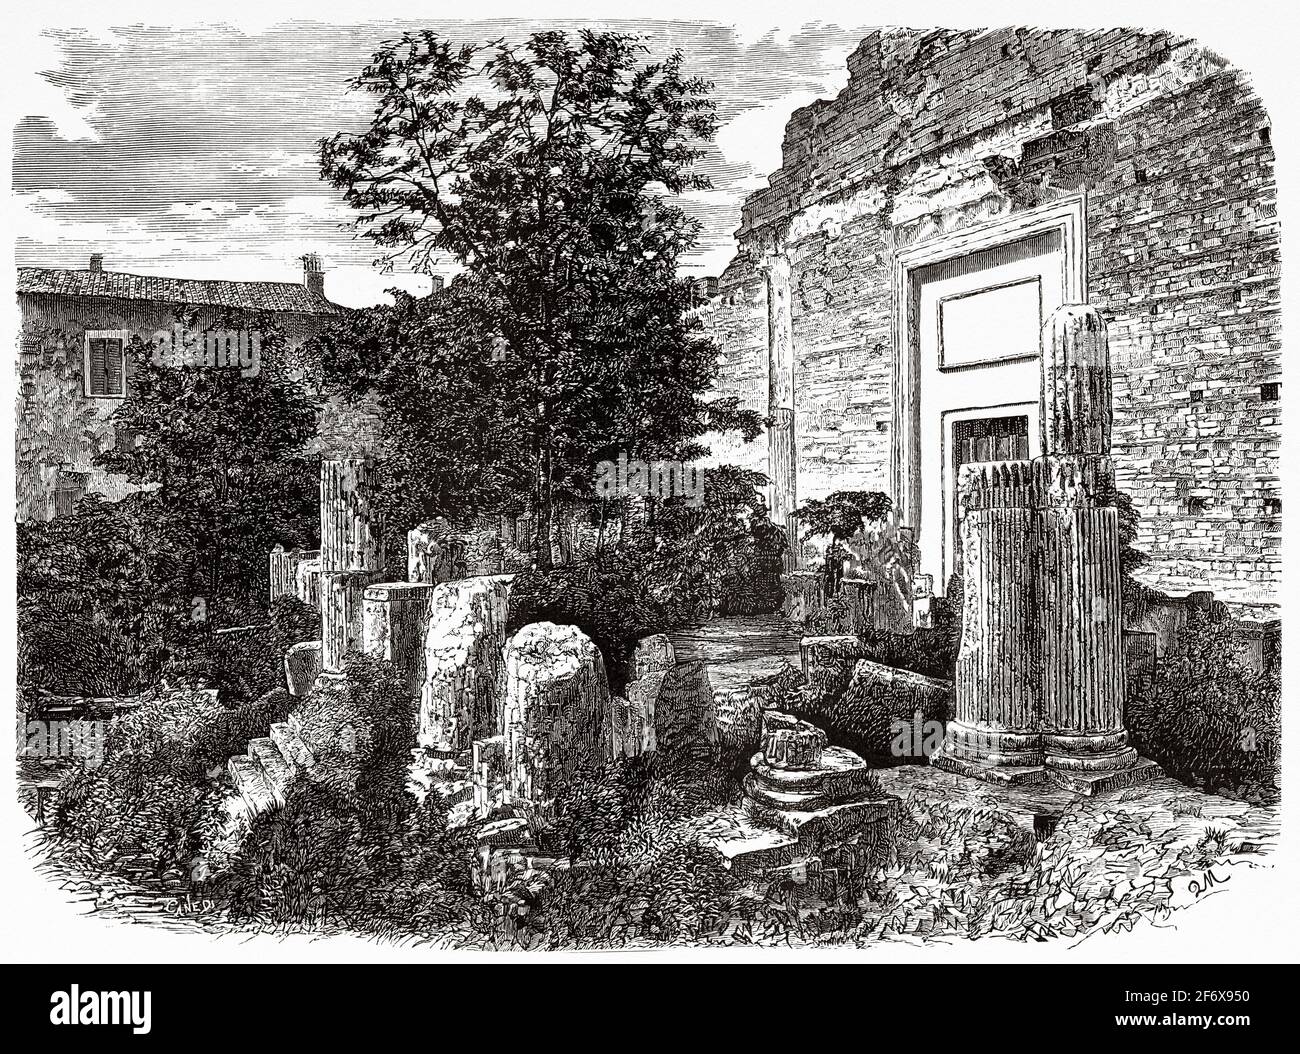 Ruines du temple de Vespasien à Brescia, Lombardie, Italie. Europe. Ancienne illustration gravée du XIXe siècle d'El Mundo Ilustrado 1879 Banque D'Images